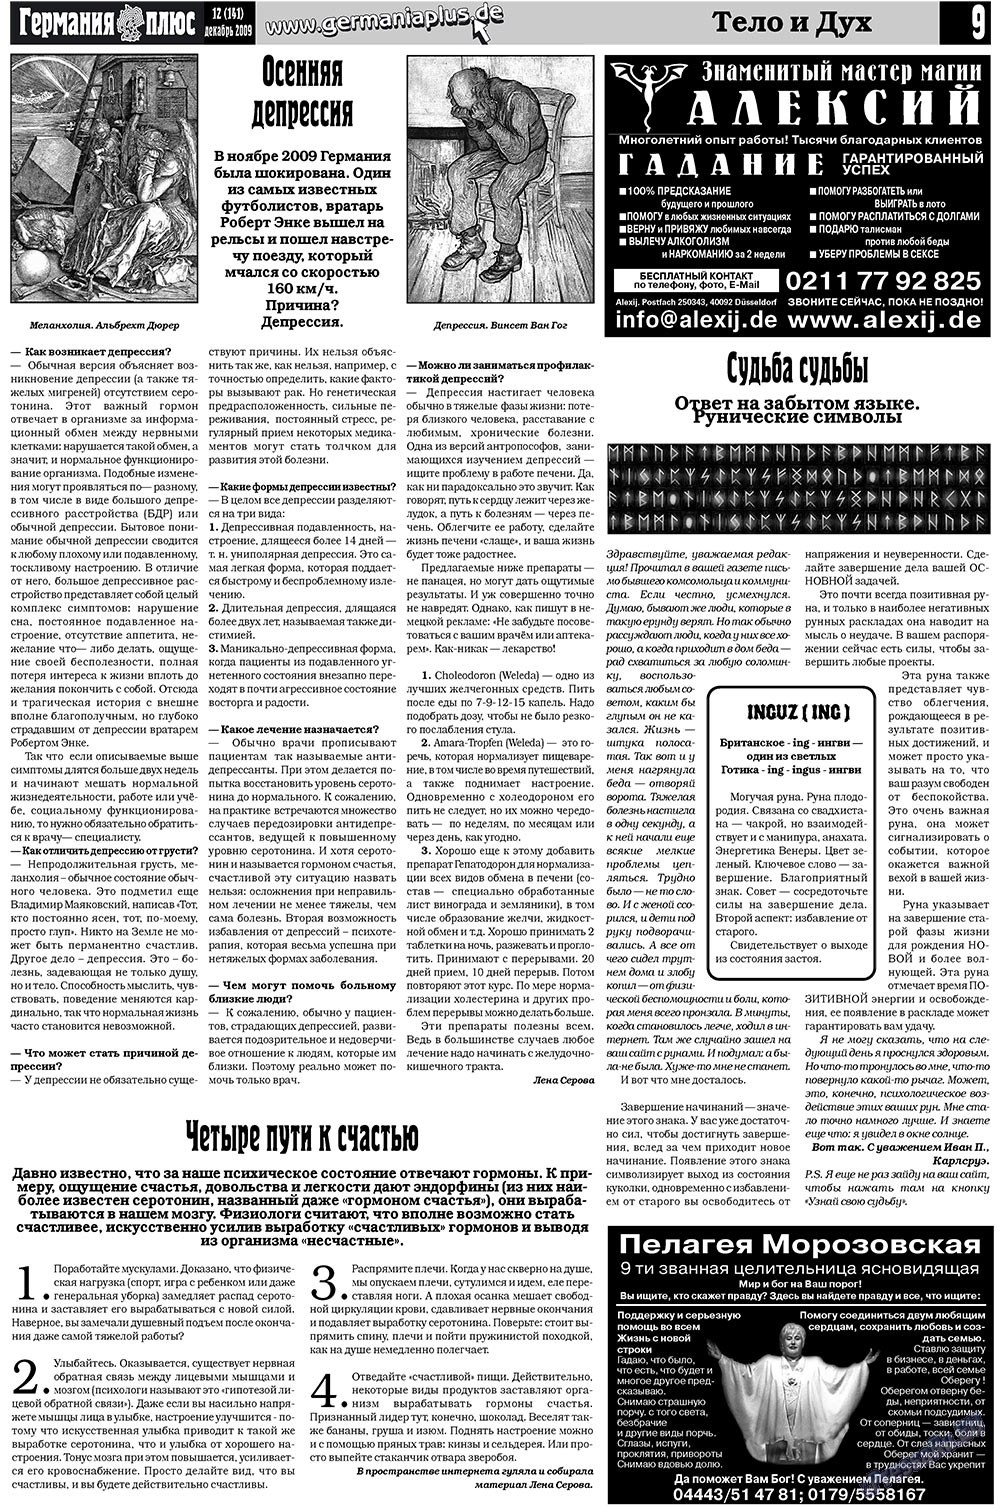 Германия плюс (газета). 2009 год, номер 12, стр. 9